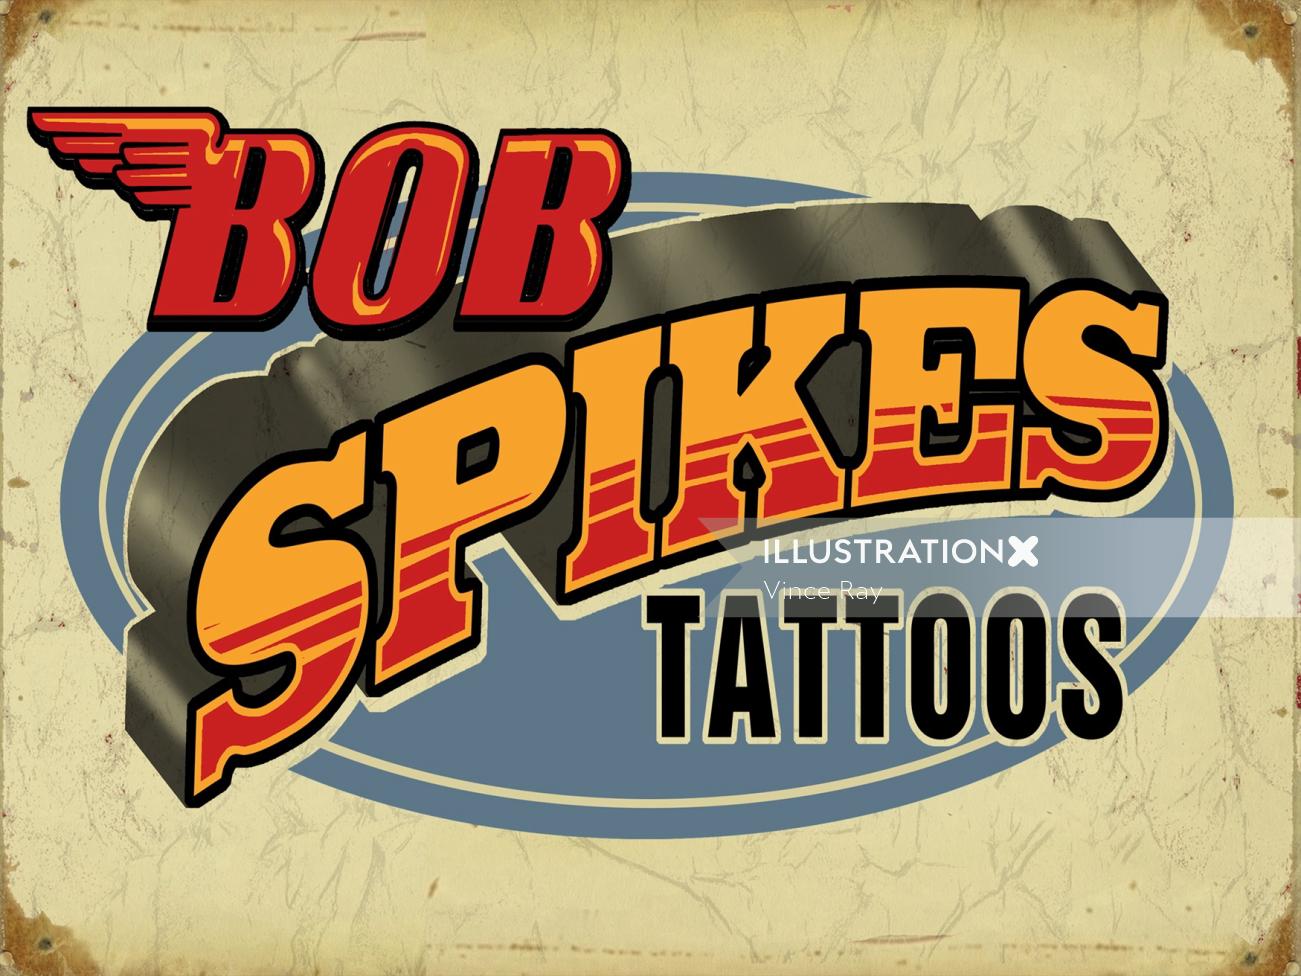 Letras de mão de Bob spikes tatuagens